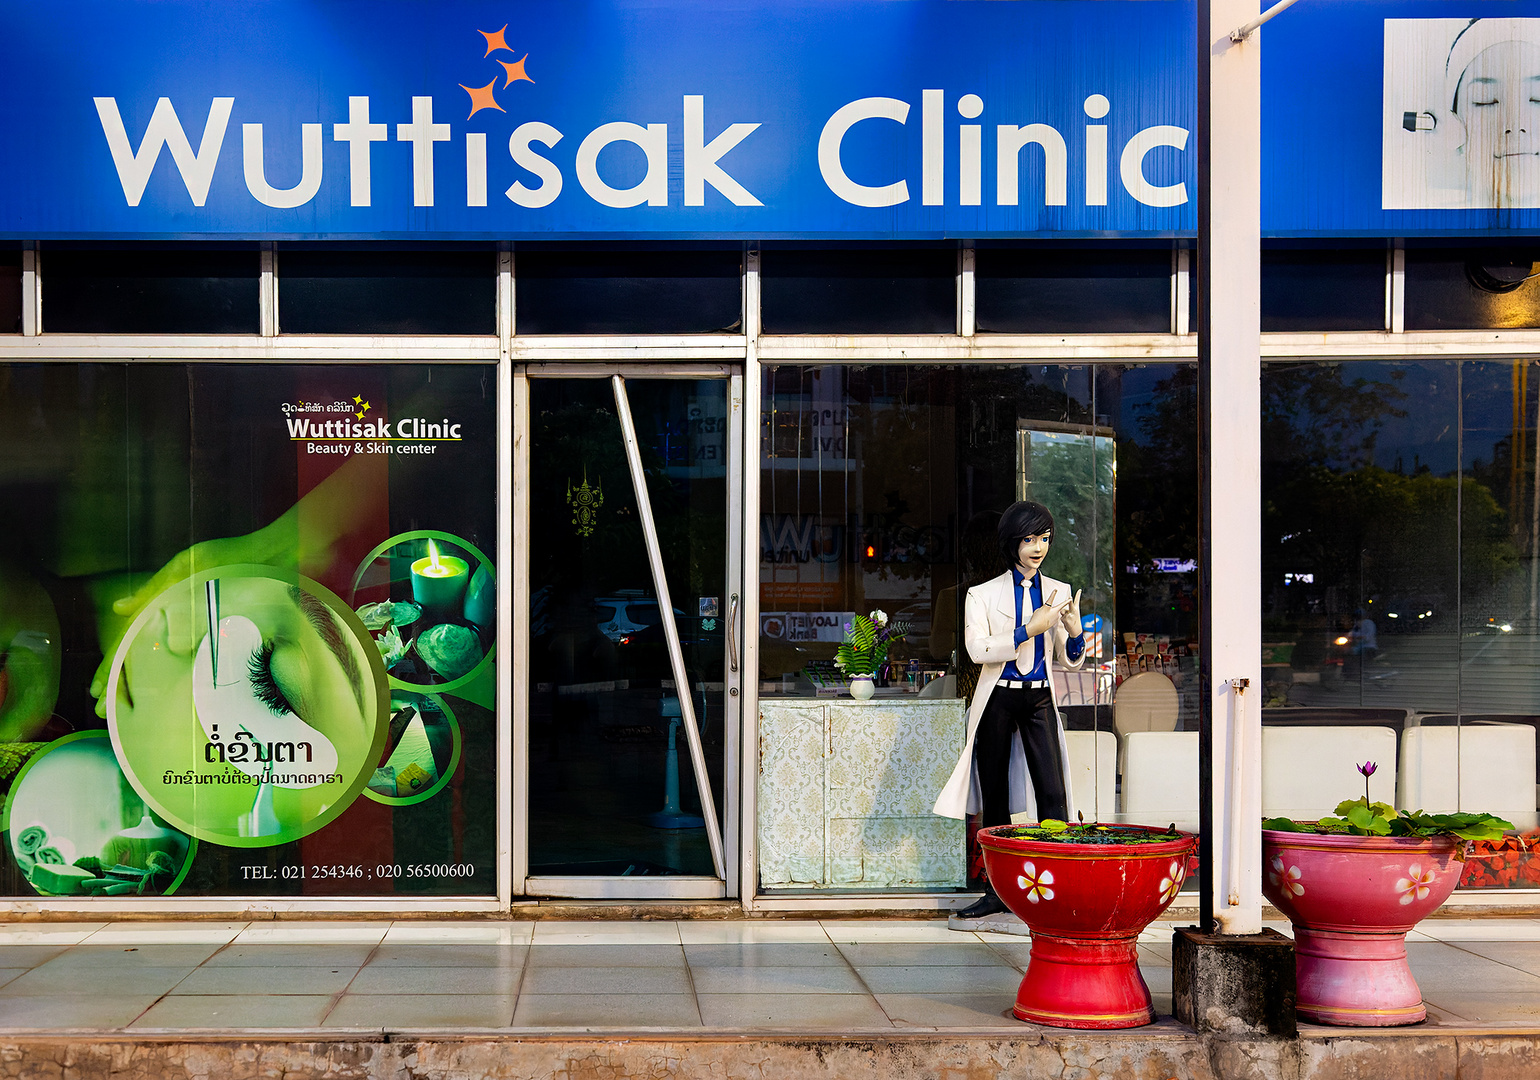 Wuttisak Clinic in Vientiane